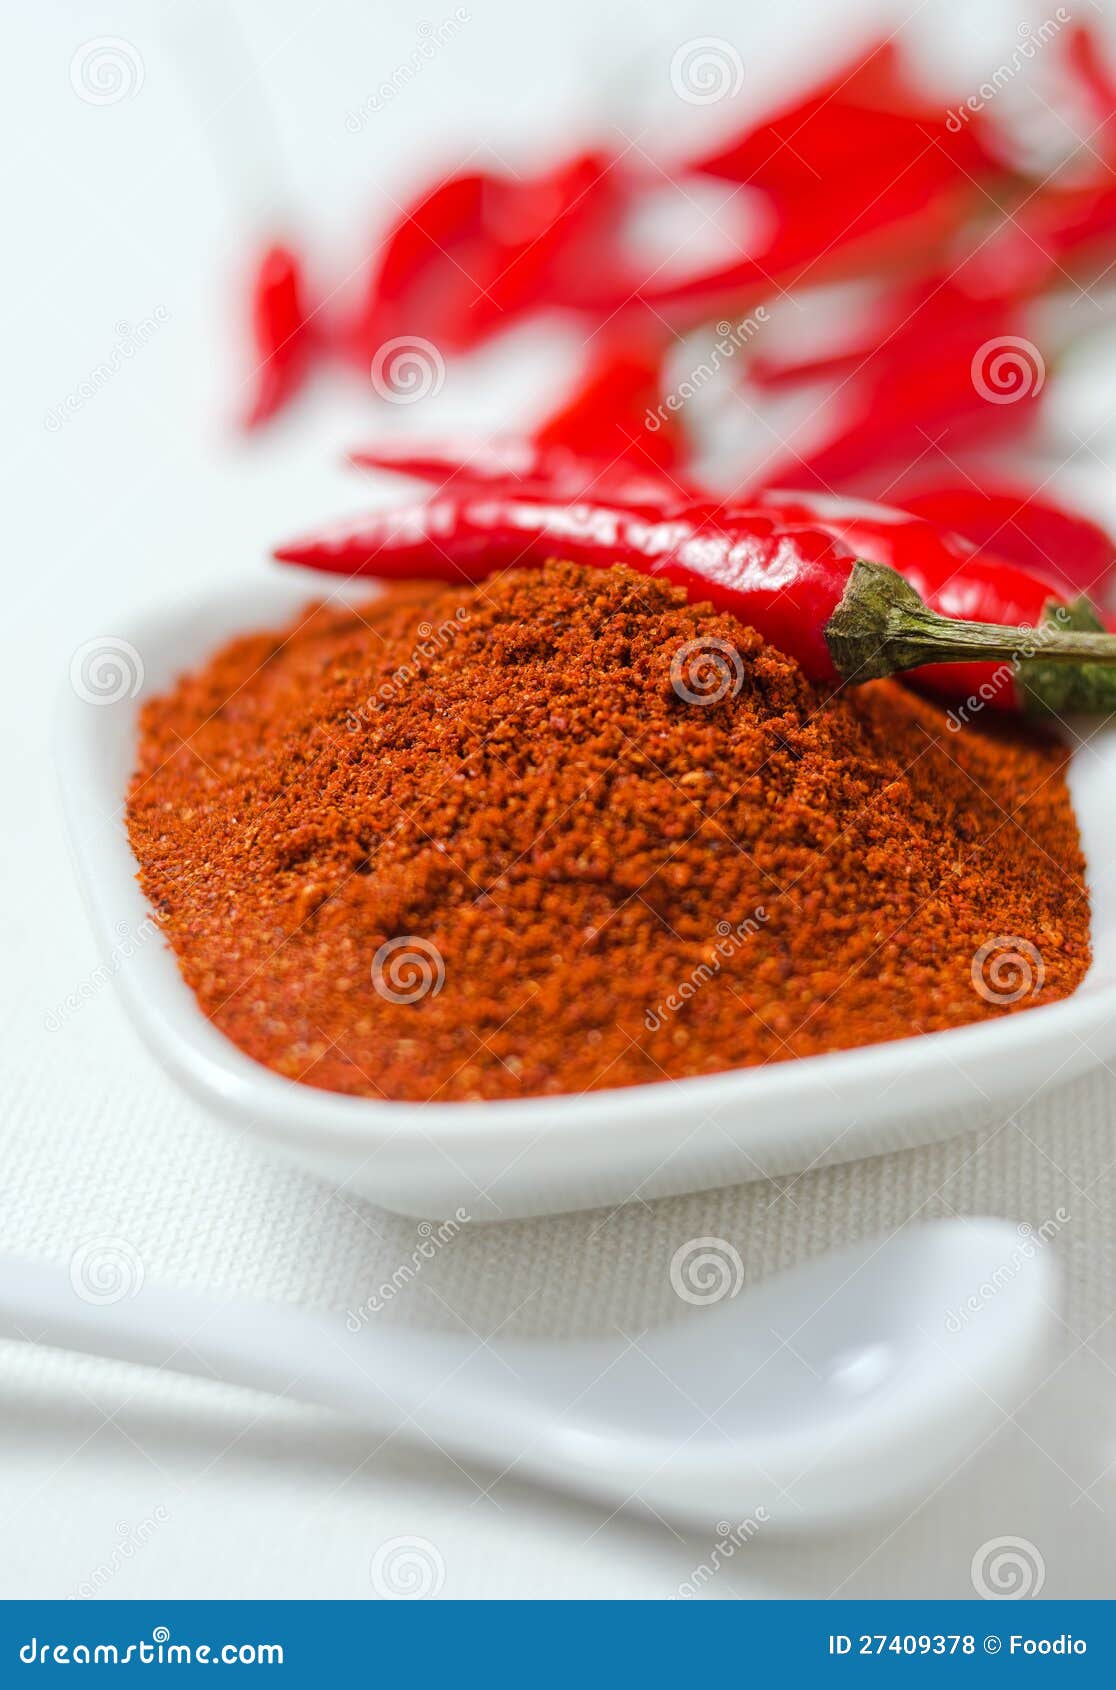 ground cayenne pepper